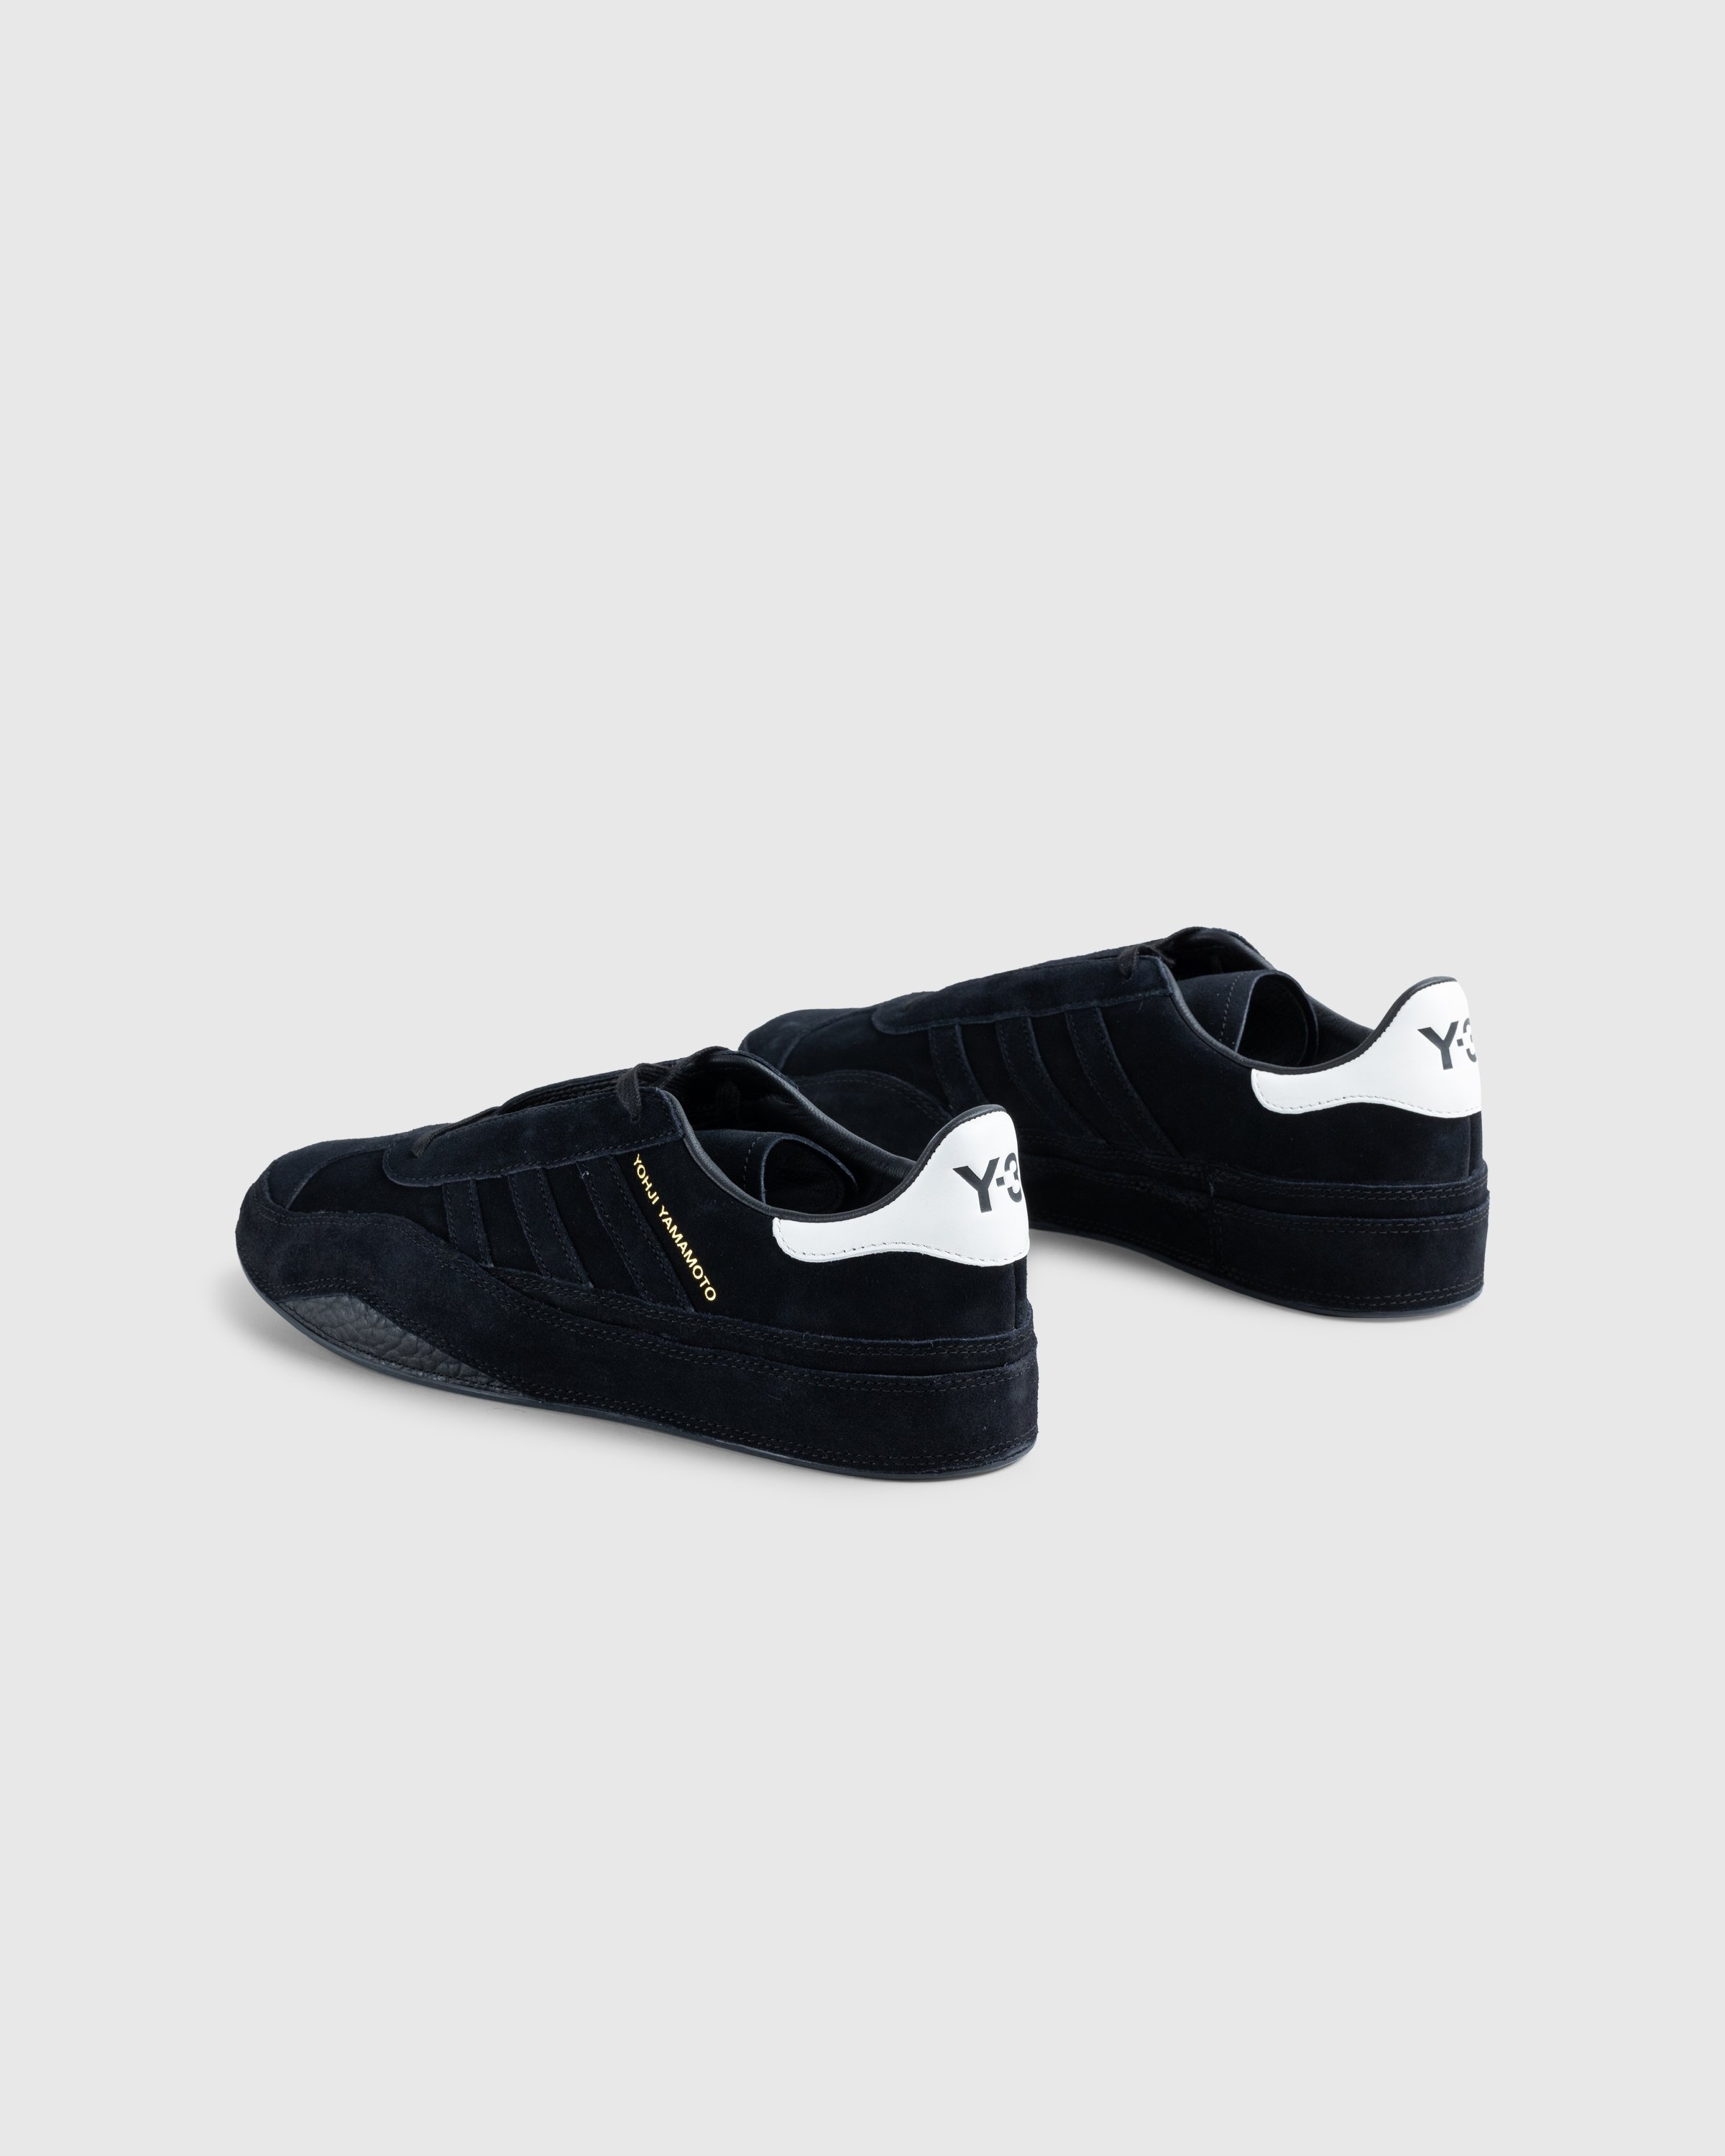 Y-3 – Gazelle Black - Sneakers - Black - Image 4